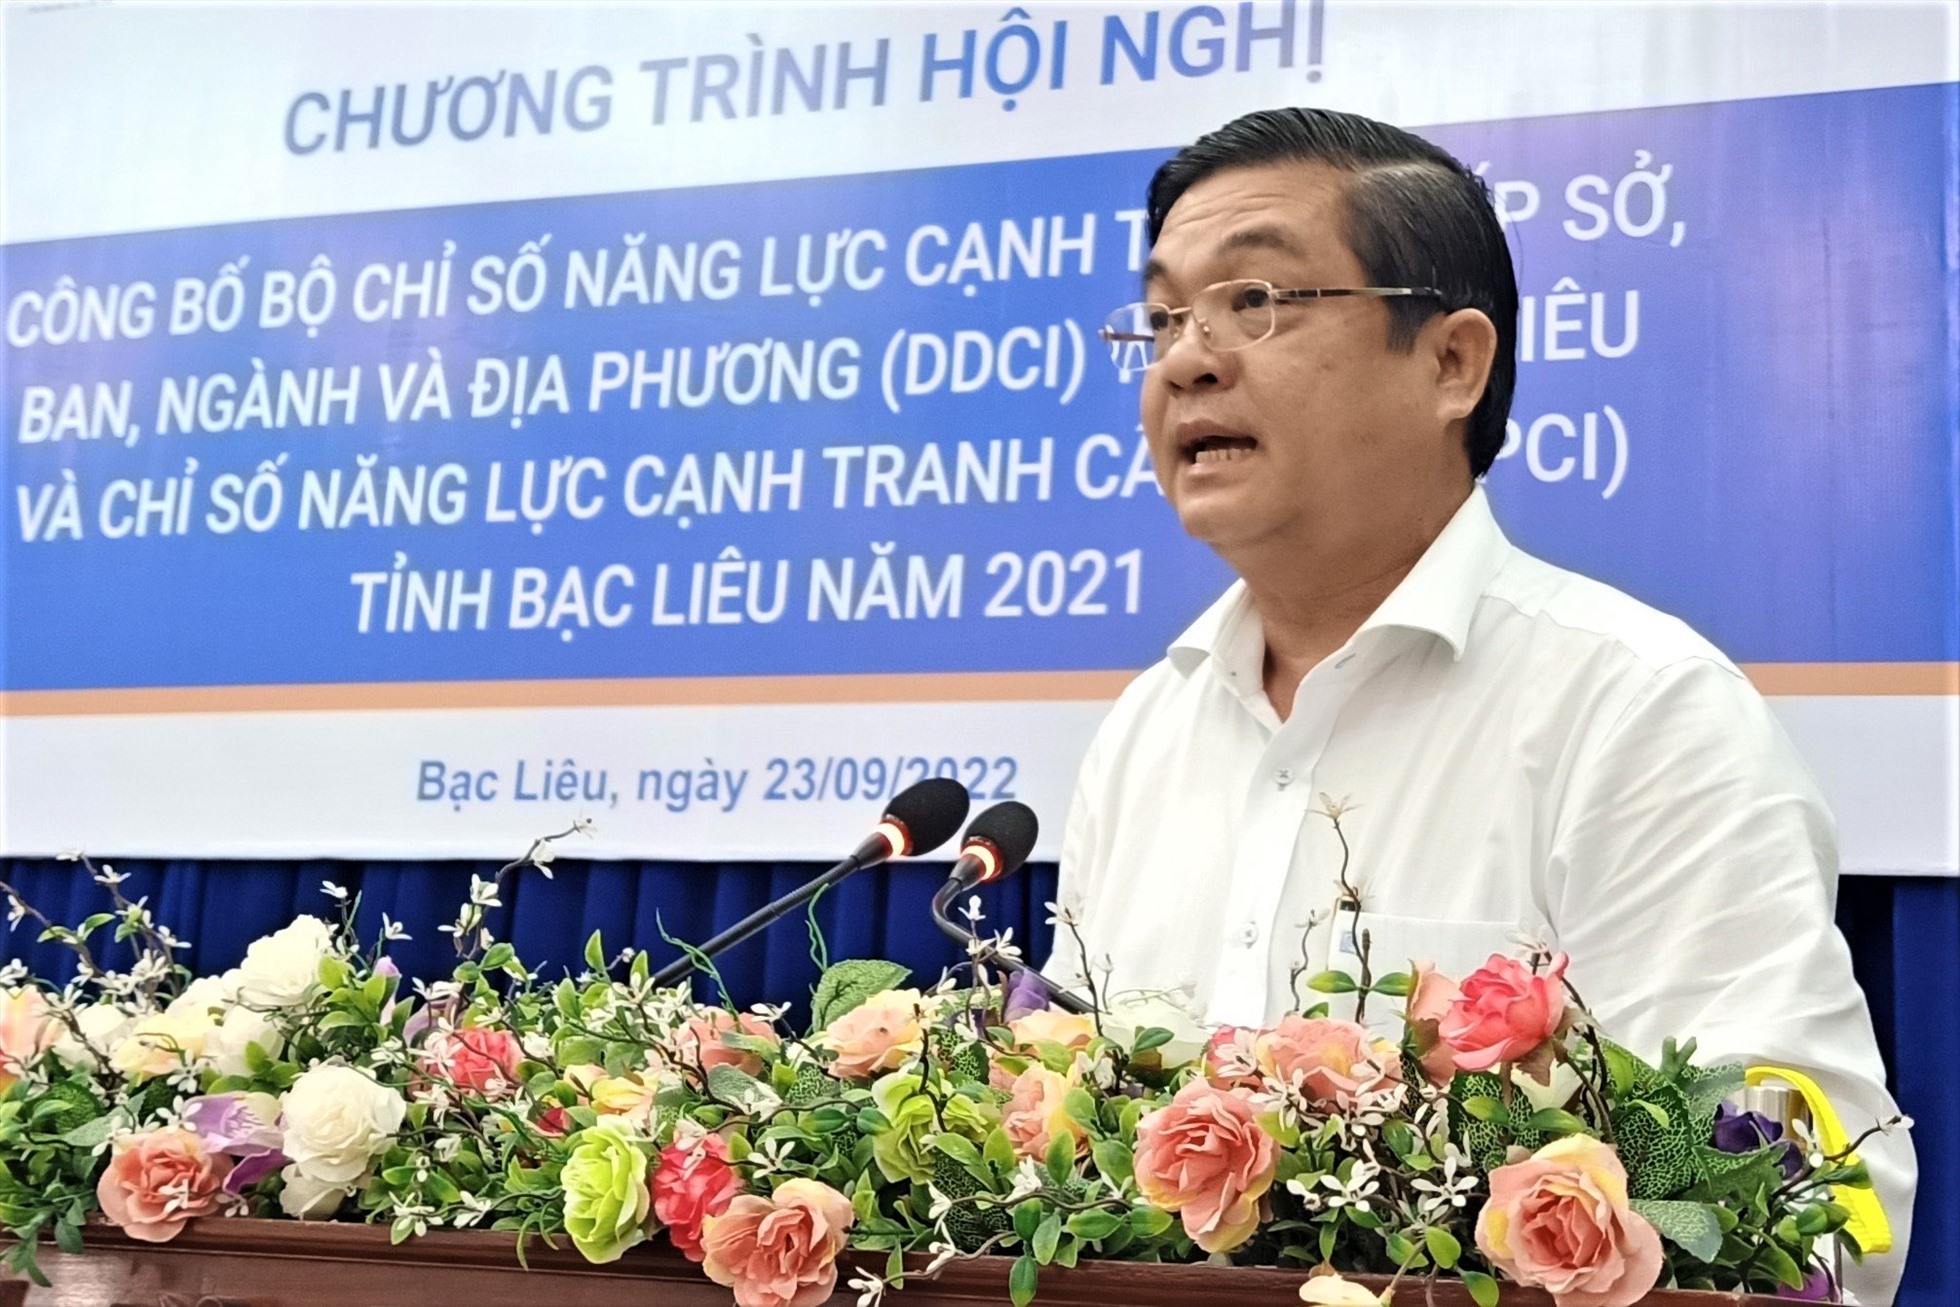 Ông Huỳnh Chí Nguyện, Giám đốc Sở Kế hoạch Đầu tư tỉnh Bạc Liêu báo cáo tổng hợp ý kiến khảo sát các doanh nghiệp tại hội nghị. Ảnh: Nhật Hồ